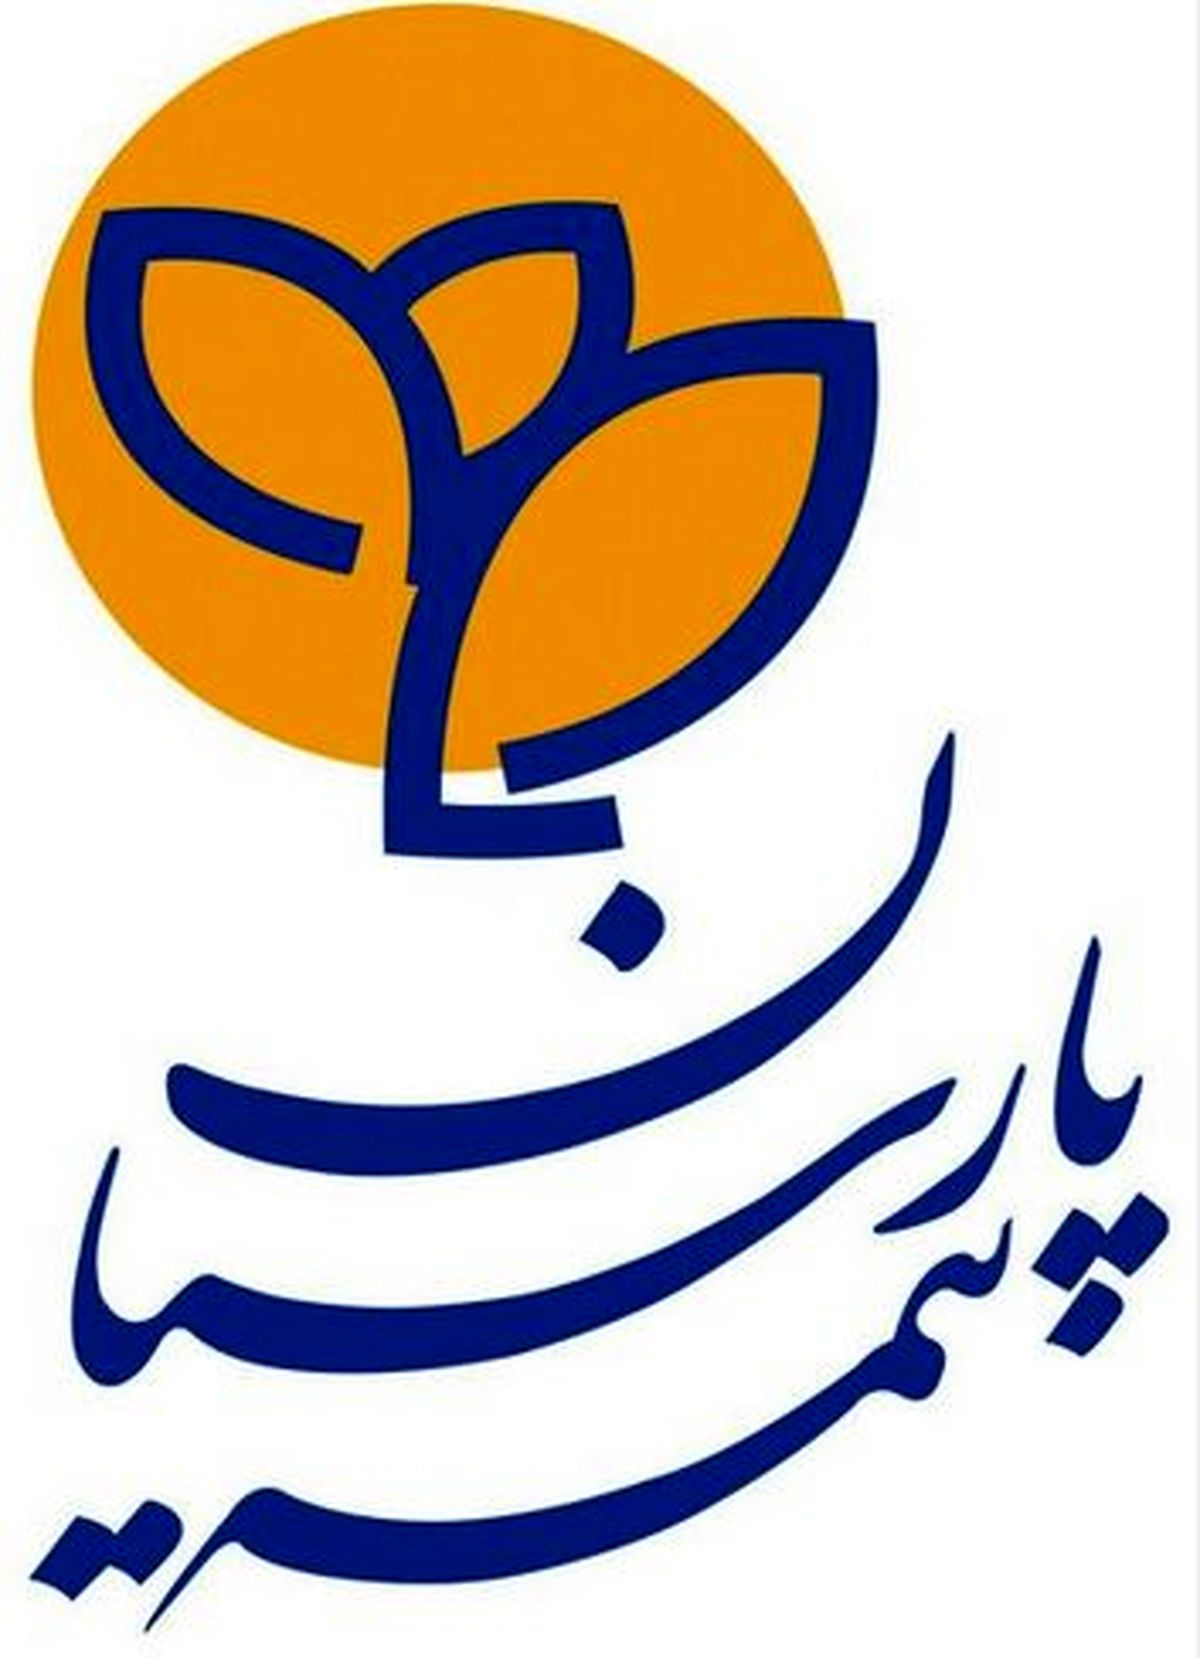 بیمه پارسیان اولین شرکت برگزارکننده مجمع عمومی سالانه در صنعت بیمه